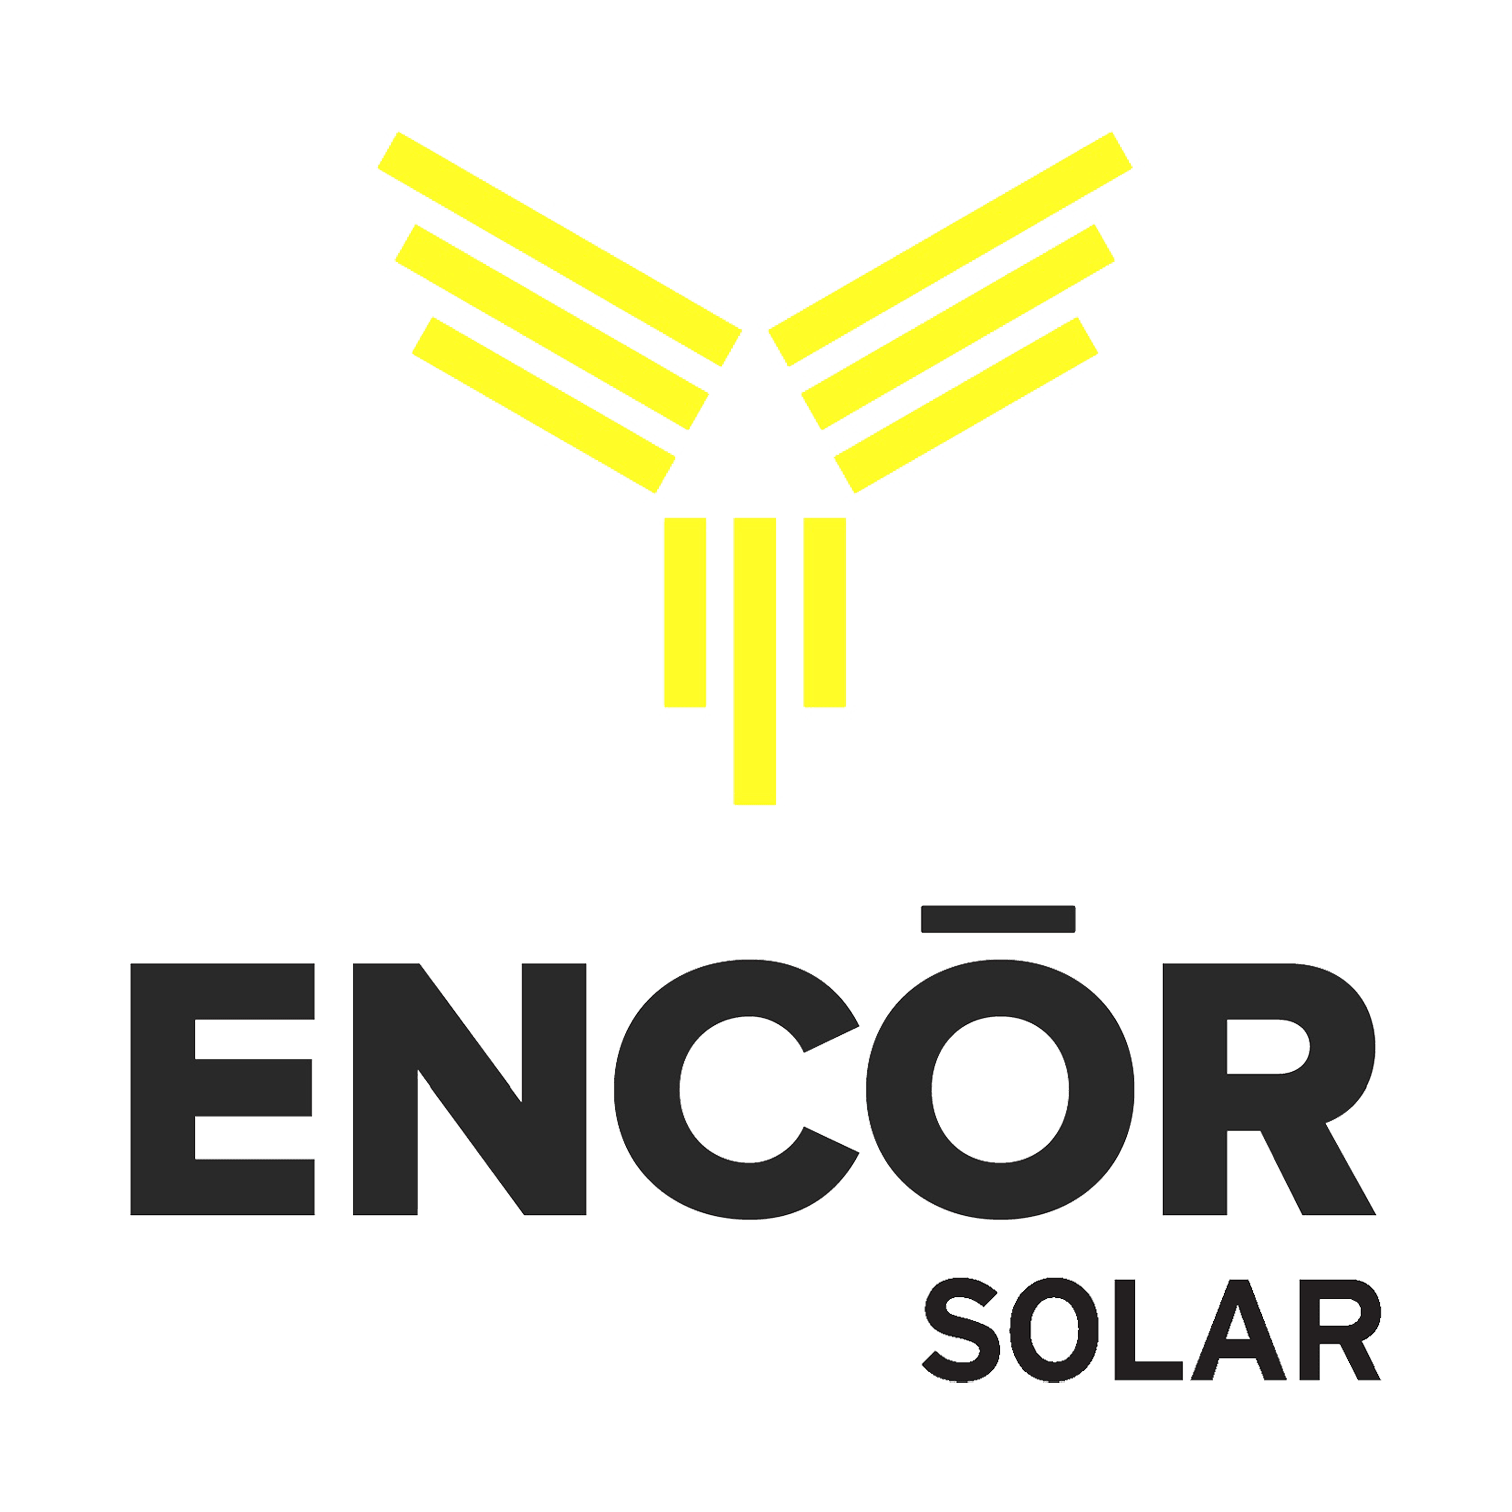 Encor Solar è una buona compagnia?